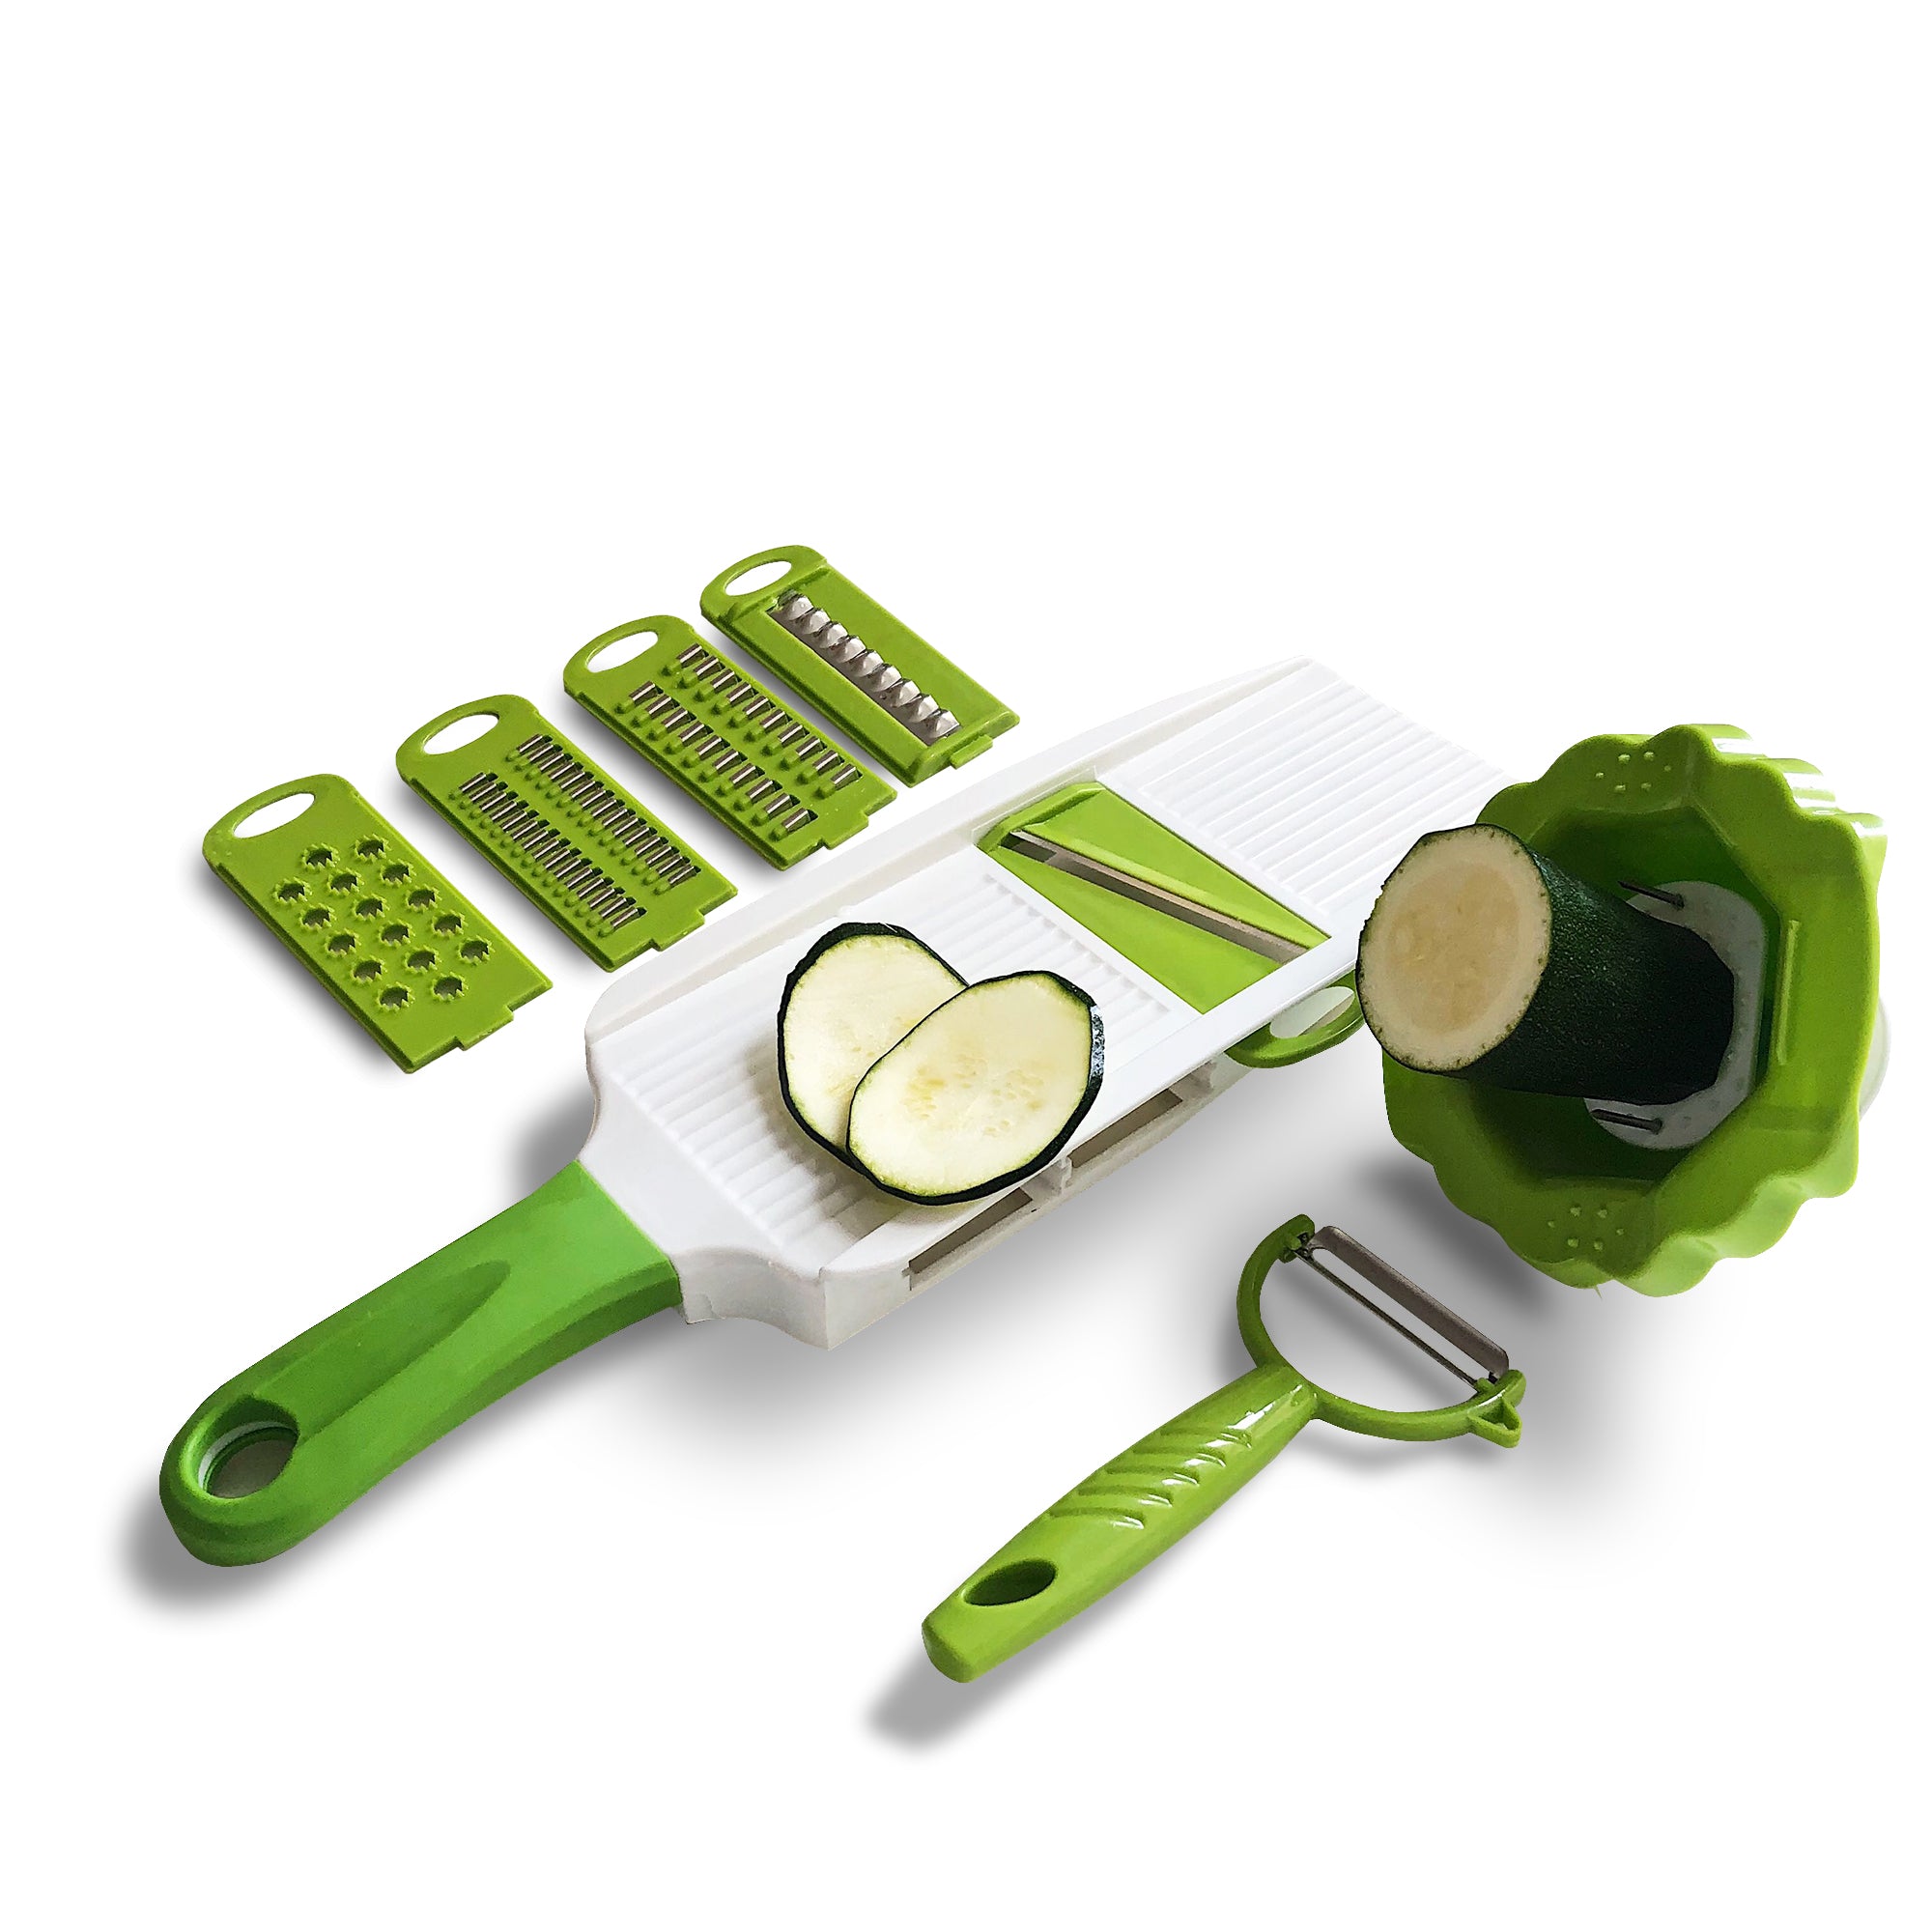 Jean-Patrique Handheld Multi 5 in 1 Vegetable Slicer